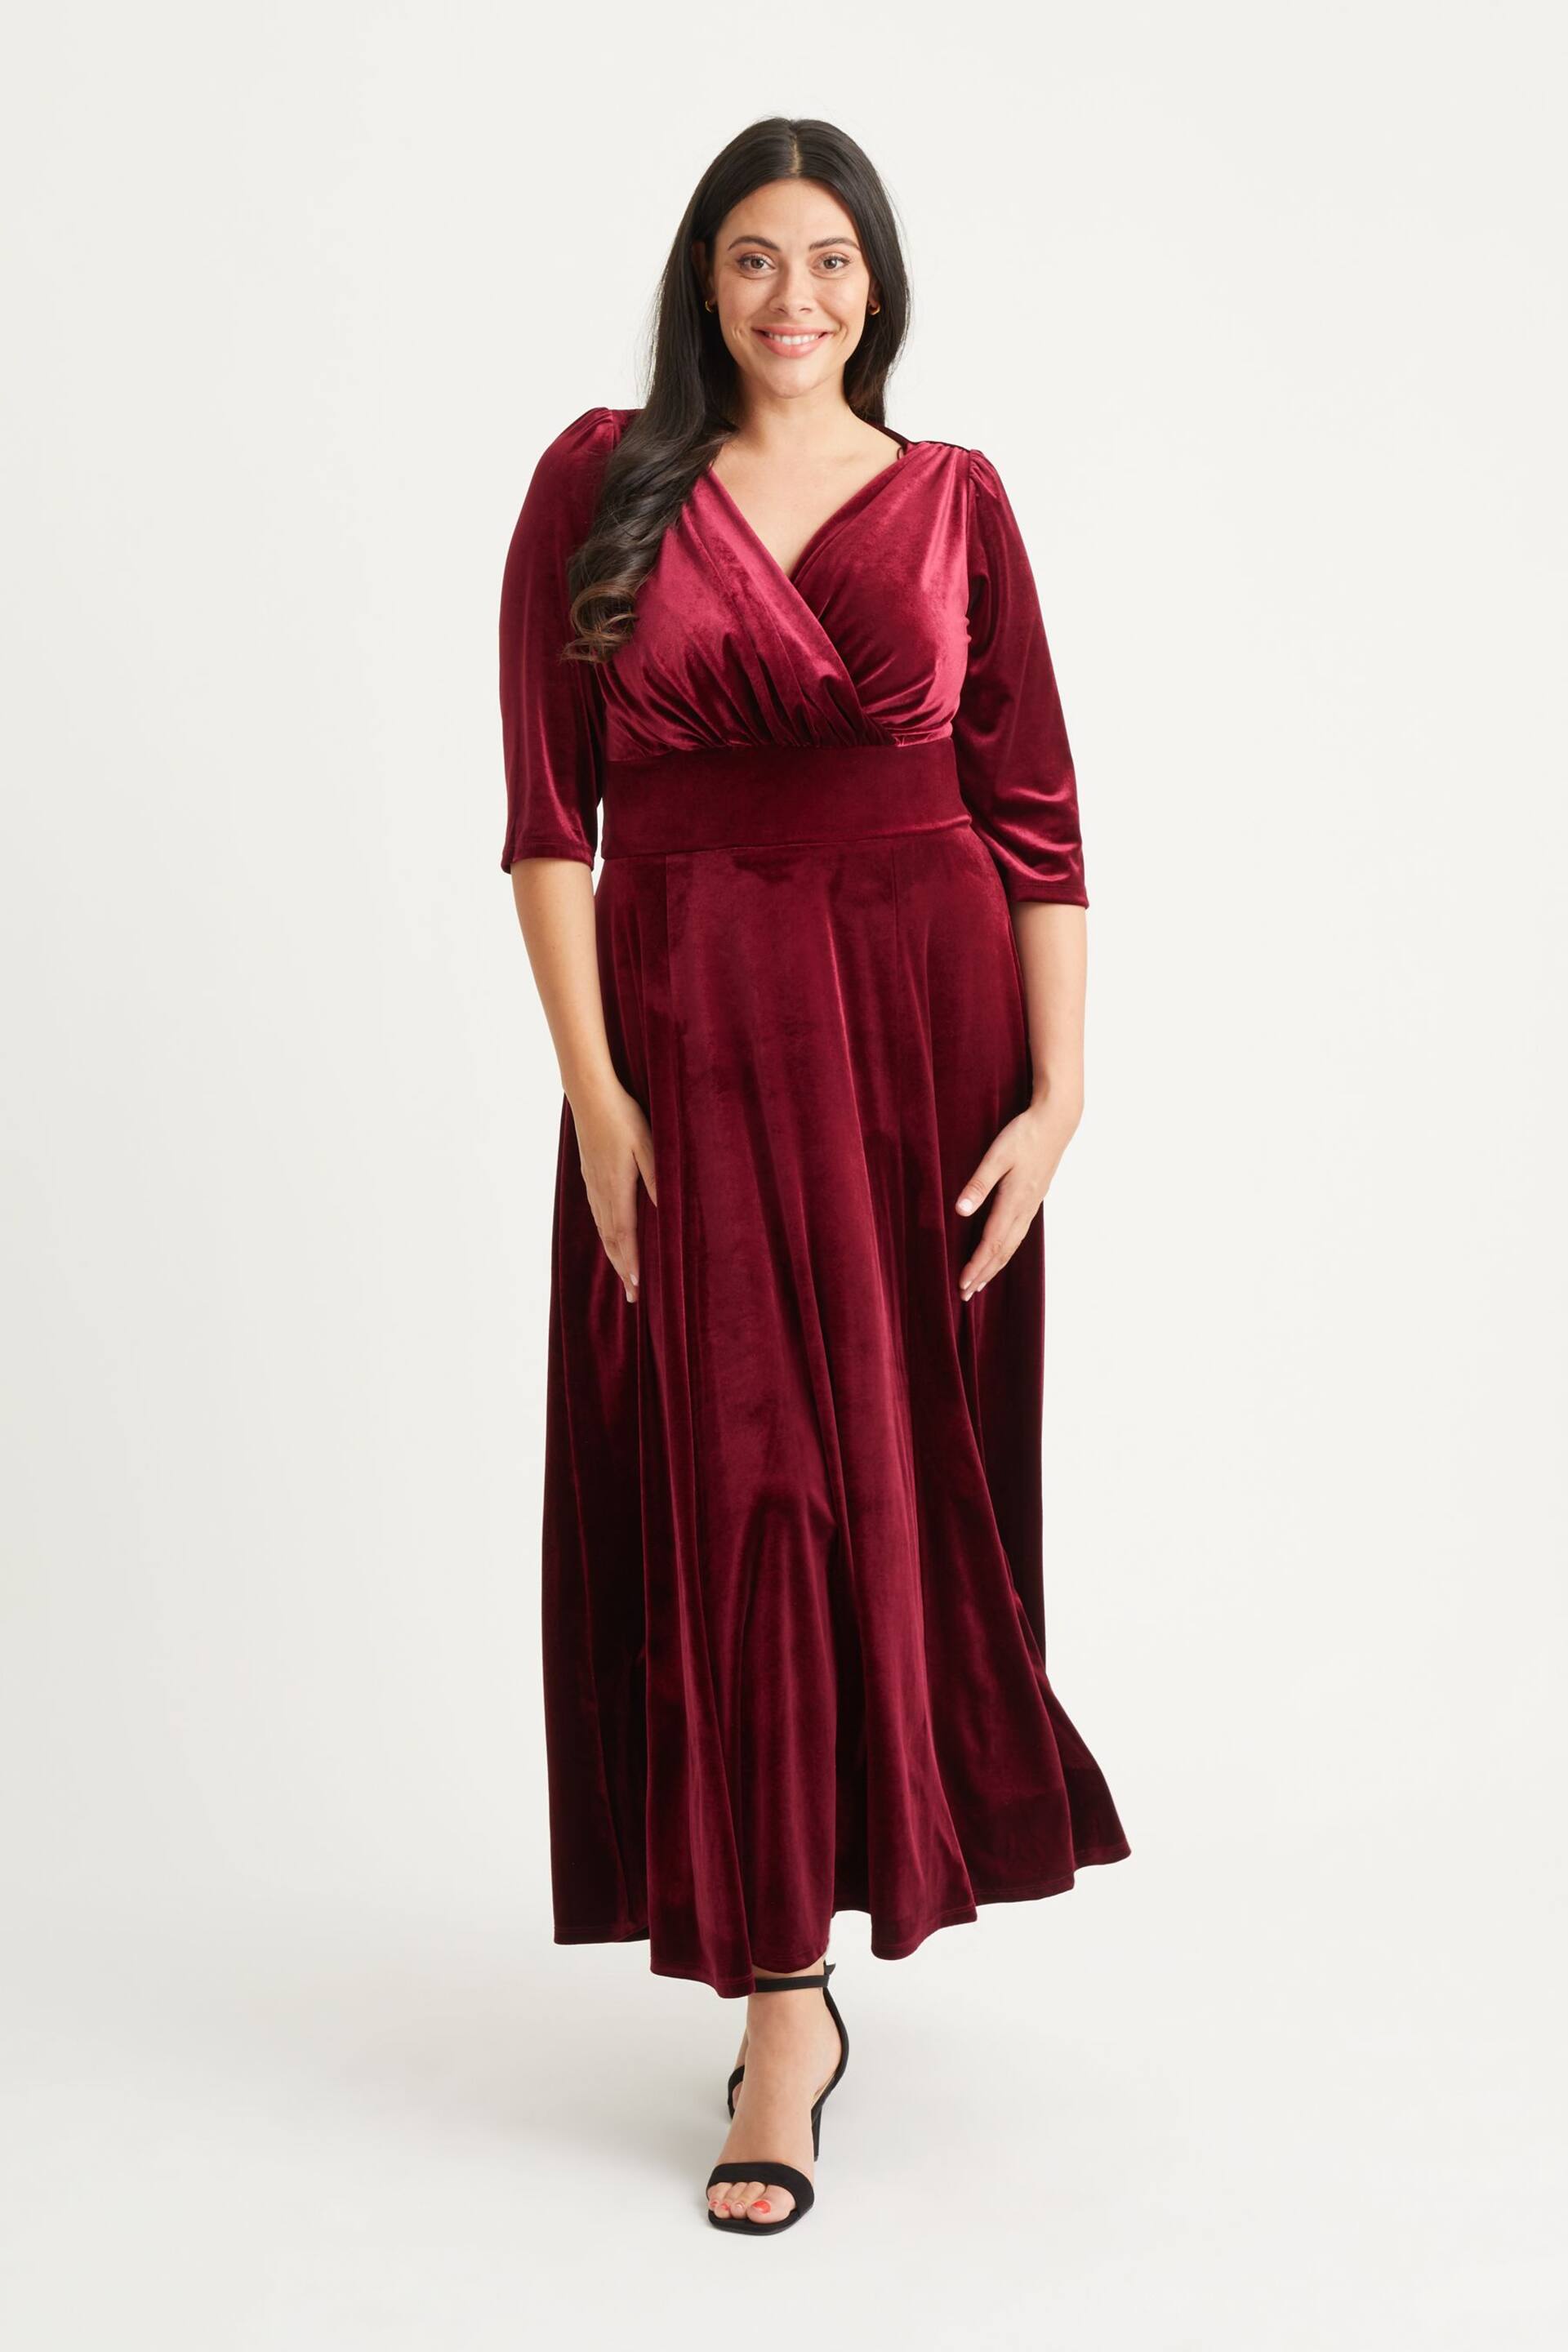 Scarlett & Jo Burgundy Red Verity Velvet Maxi Gown - Image 1 of 4